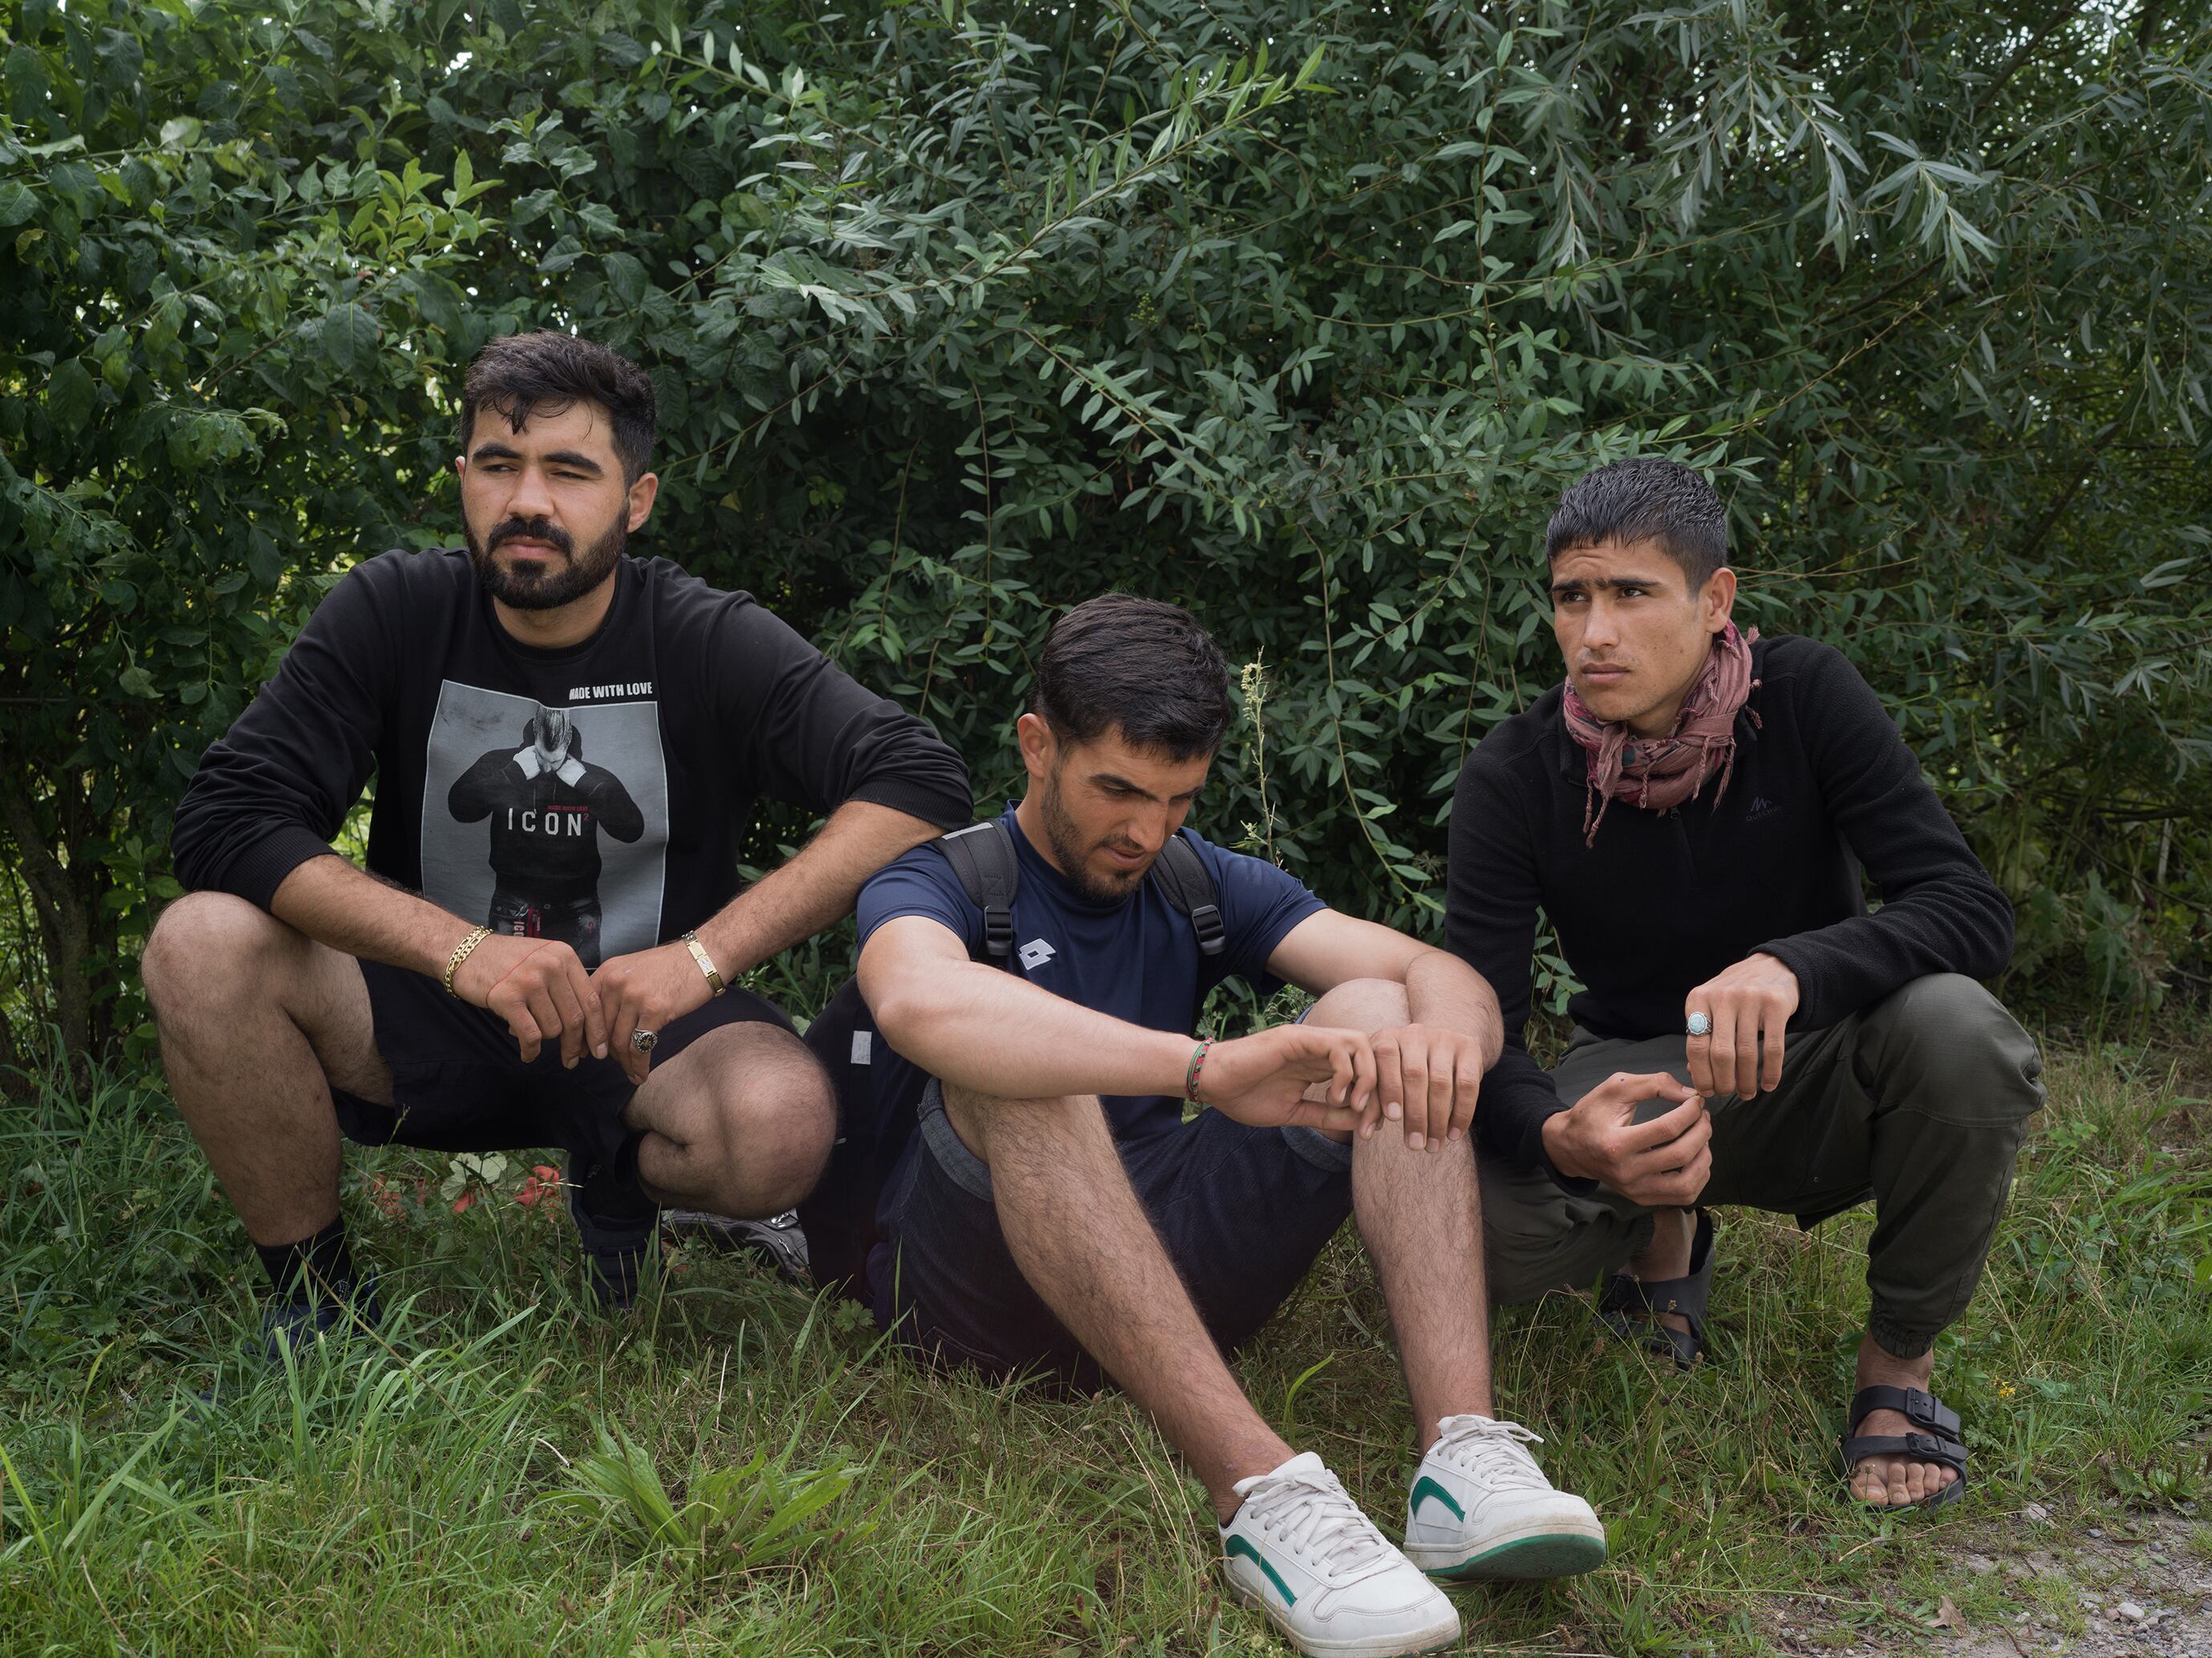 Los supervivientes del naufragio del 12 de agosto, desde la izquierda, Aref Amir (24), Hajjomid (21) y Sadaqat (17),  fotografiados en un bosque en Calais.